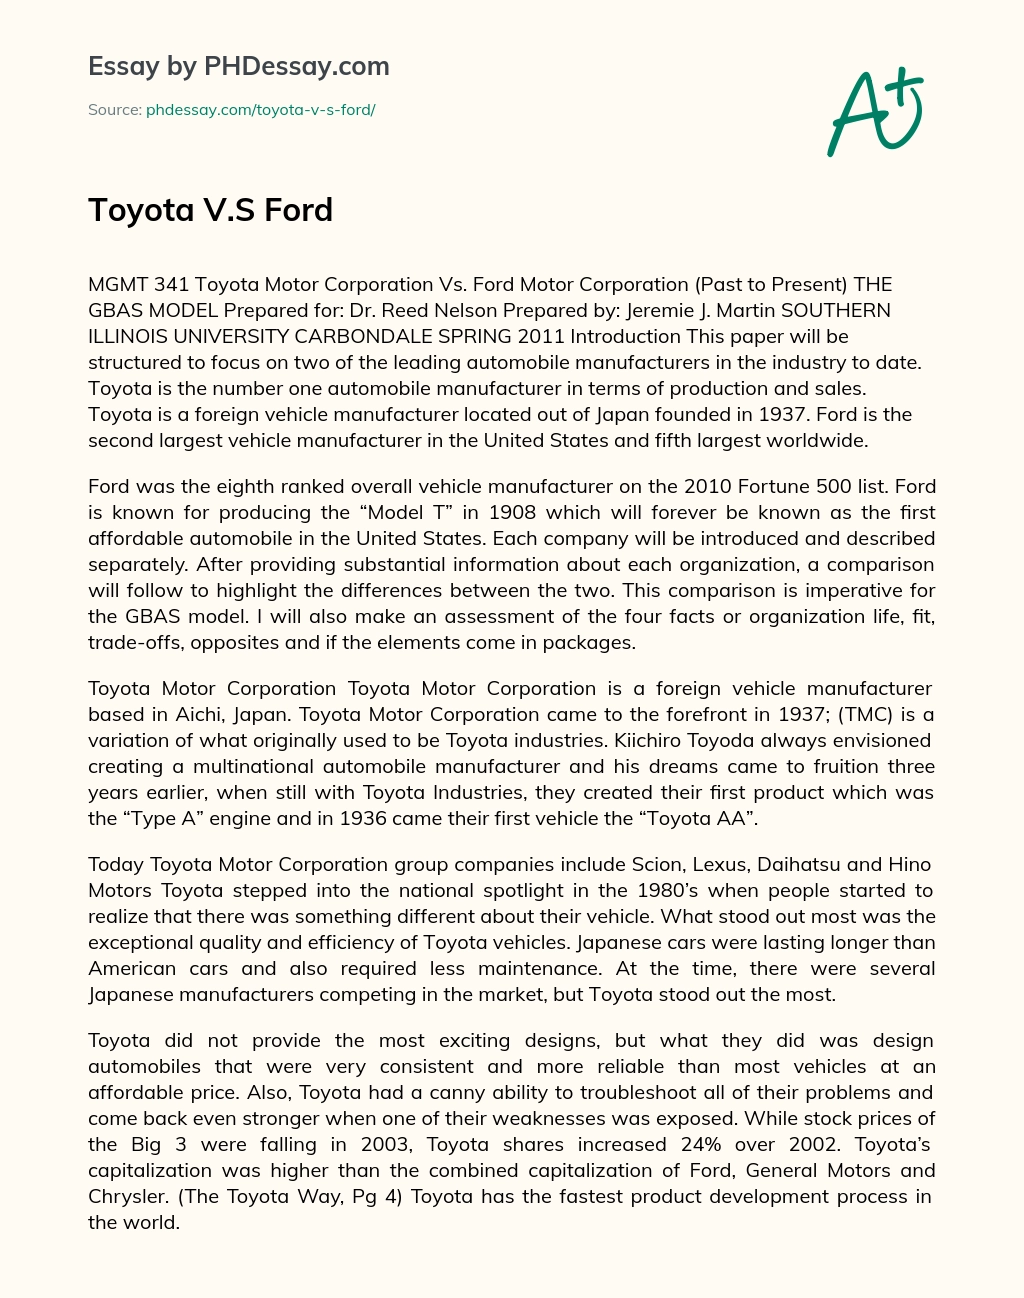 Toyota V.S Ford essay